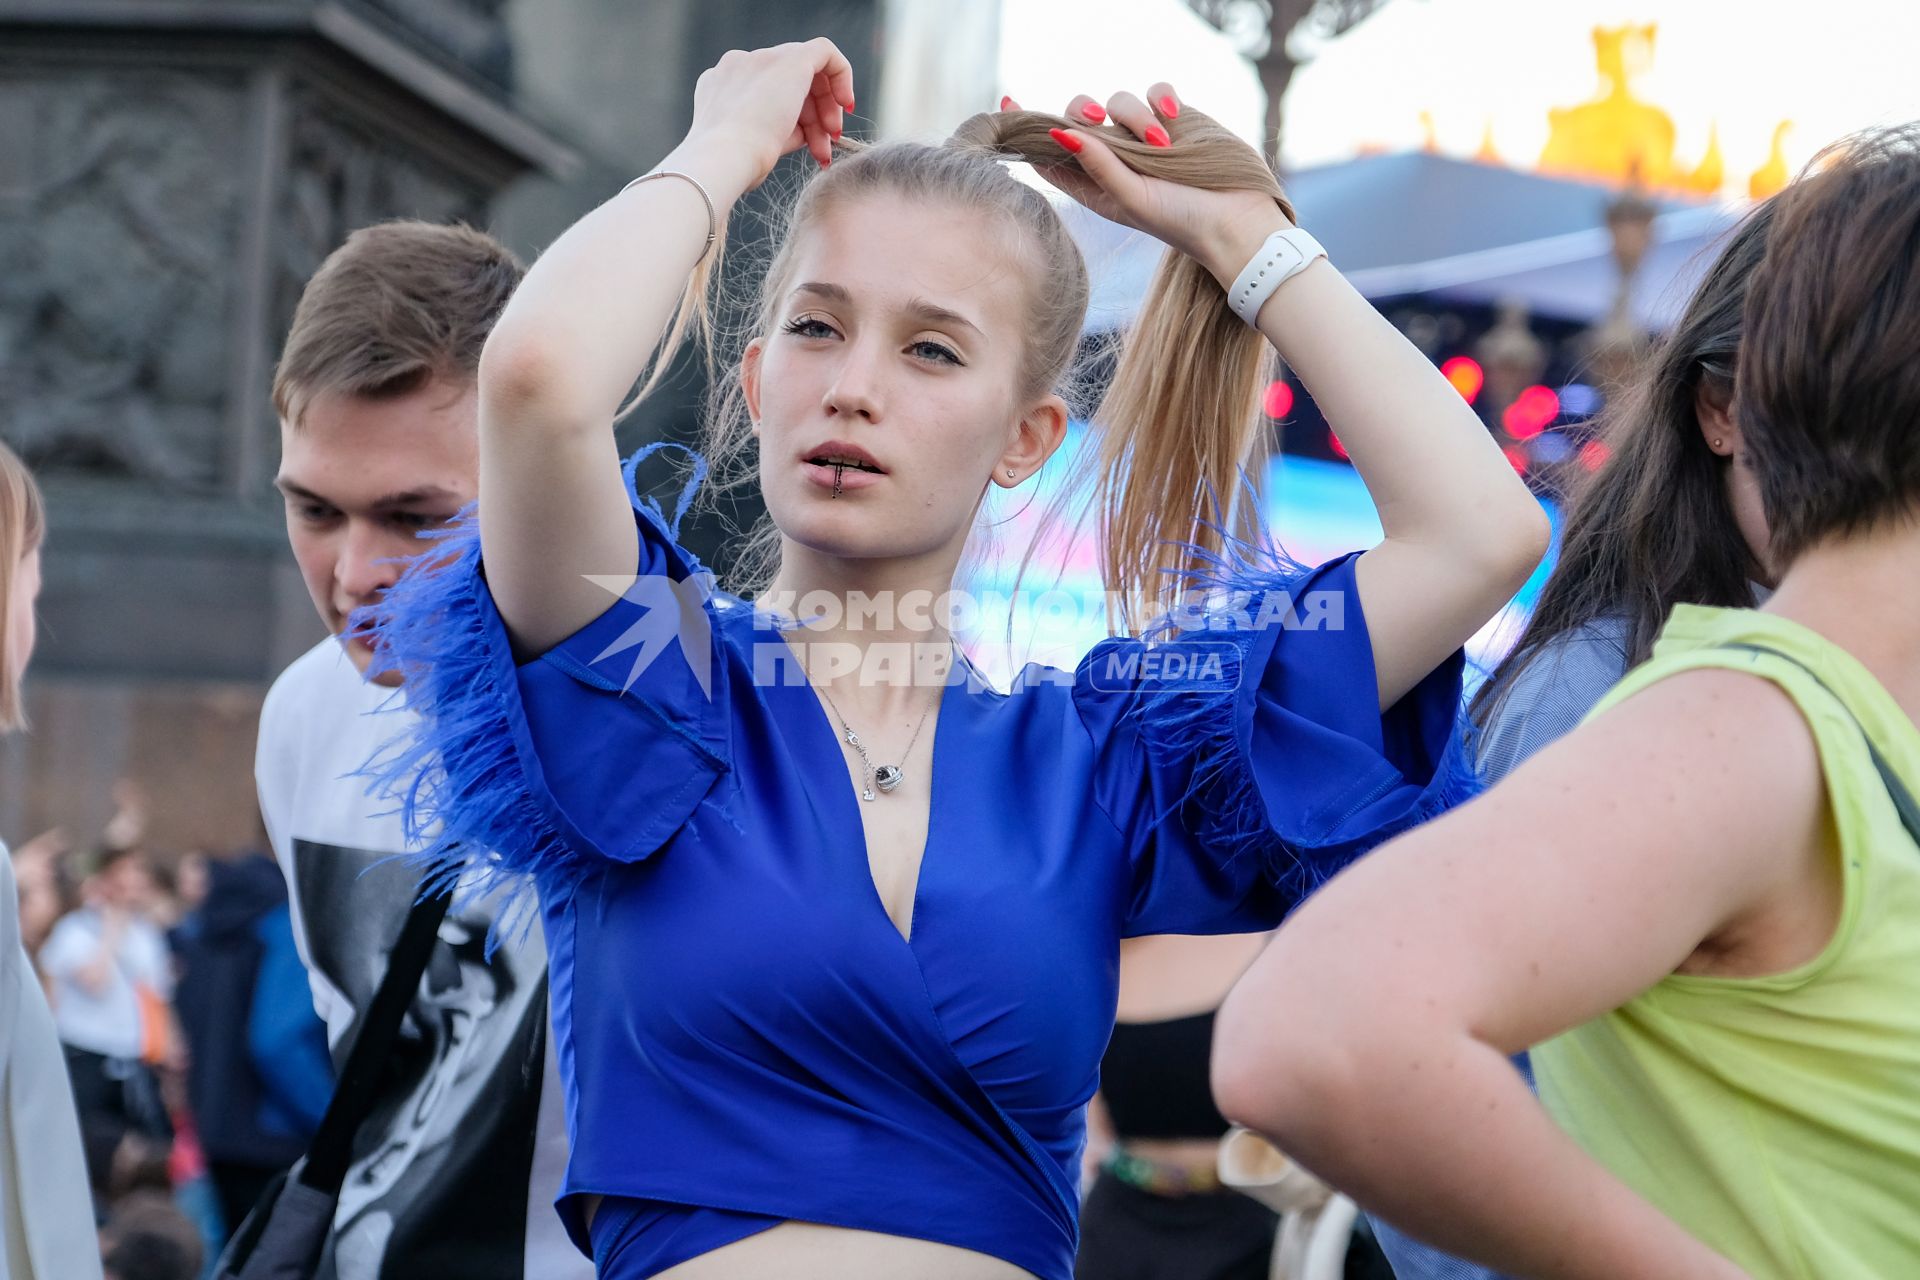 Санкт-Петербург. Девушки на Дворцовой площади перед началом праздника выпускников`Алые паруса`.